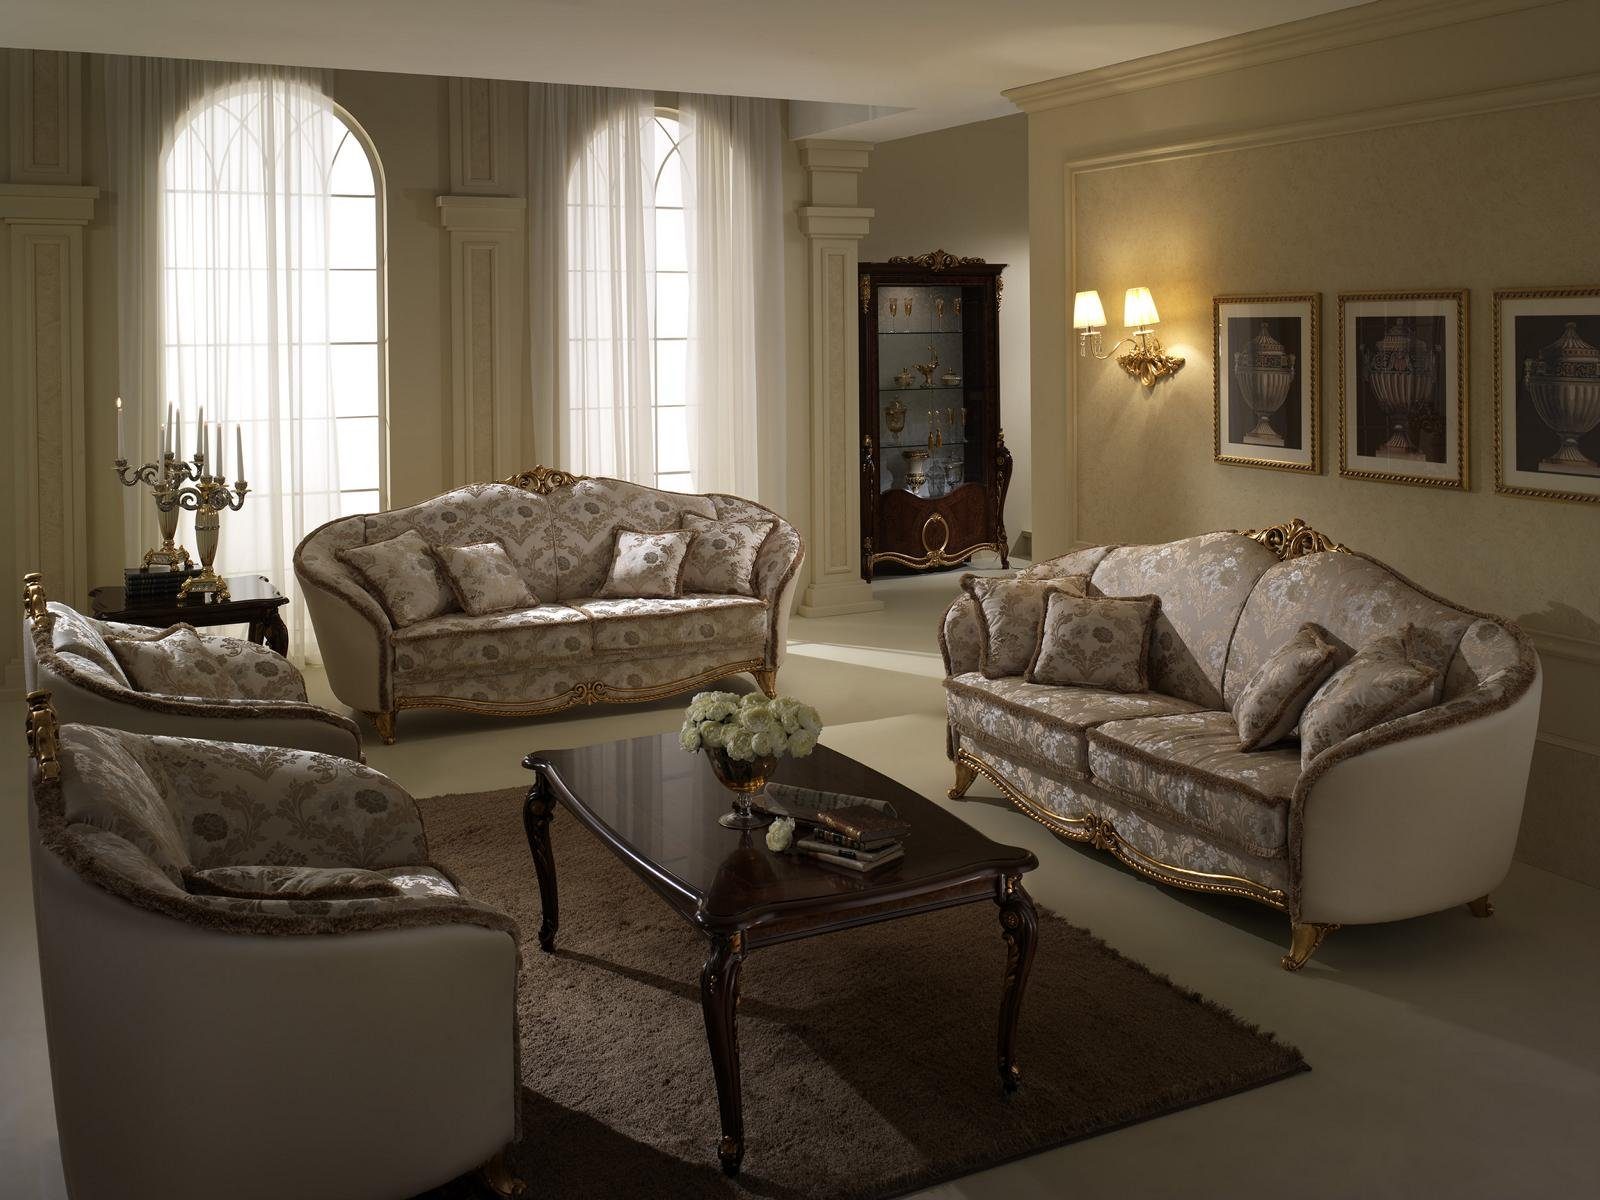 JVmoebel Wohnzimmer-Set, Luxus Klasse 3+1 Italienische Möbel Sofagarnitur Couch Sofa Neu arredoclassic™